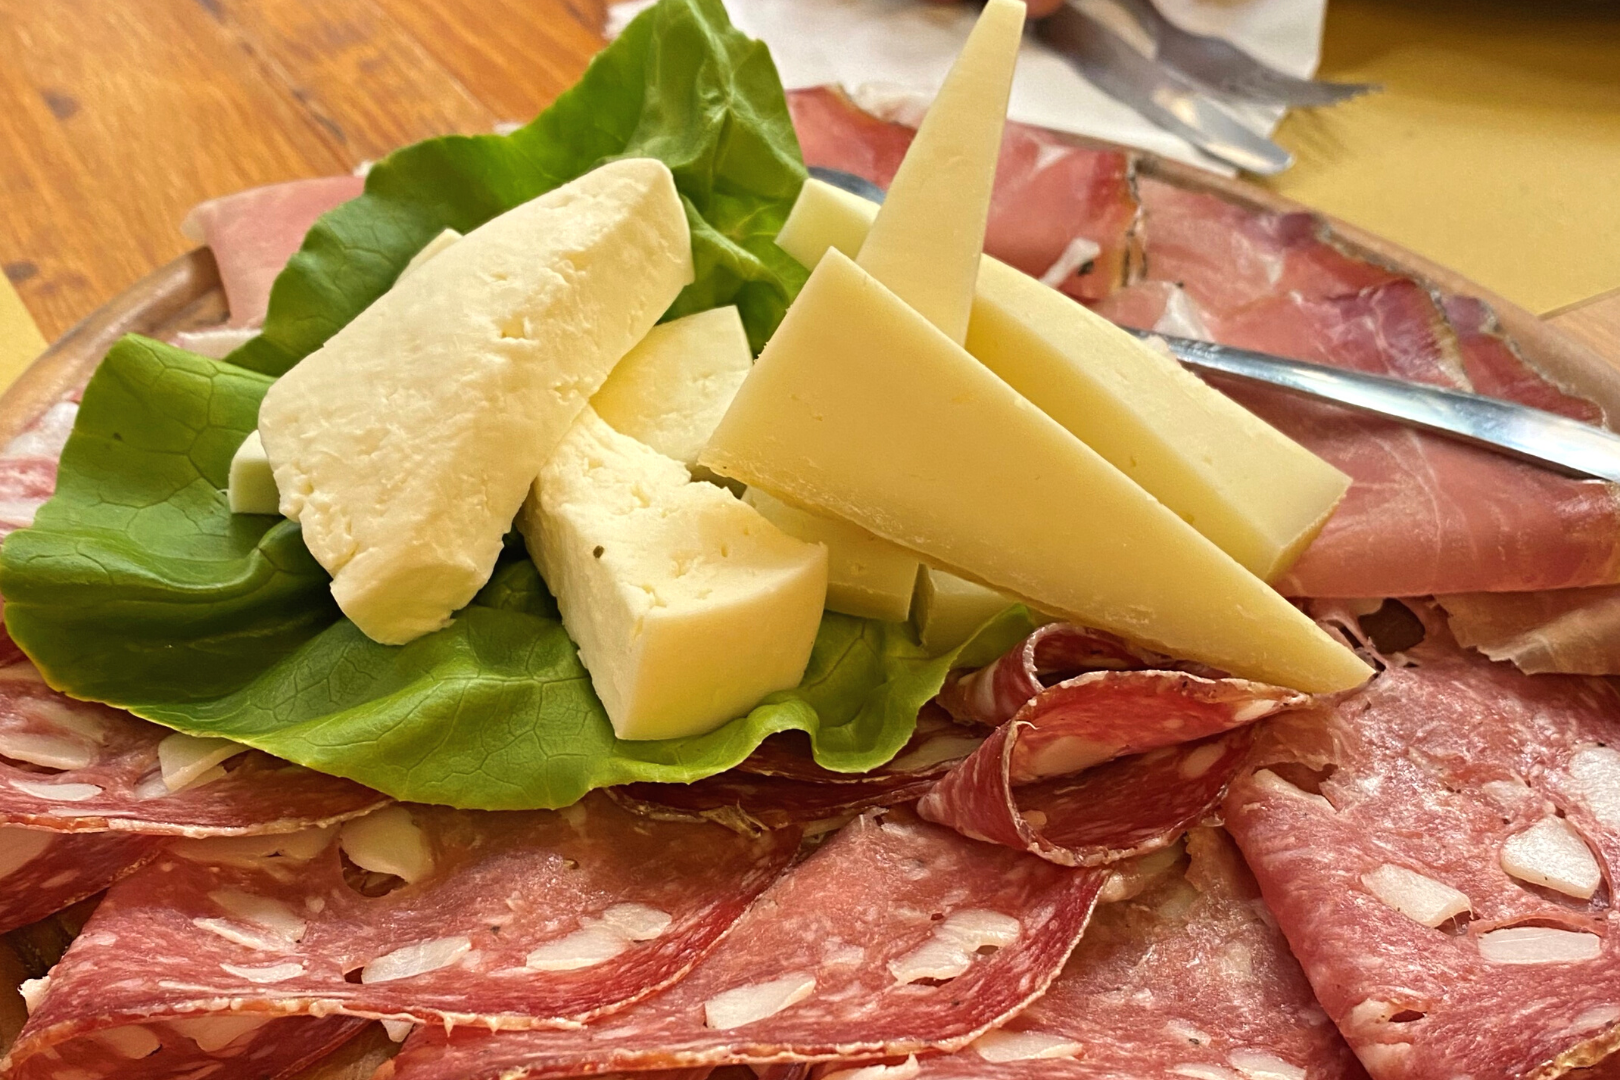 2Italia Food & Wine. Ham and cheese aperitivo